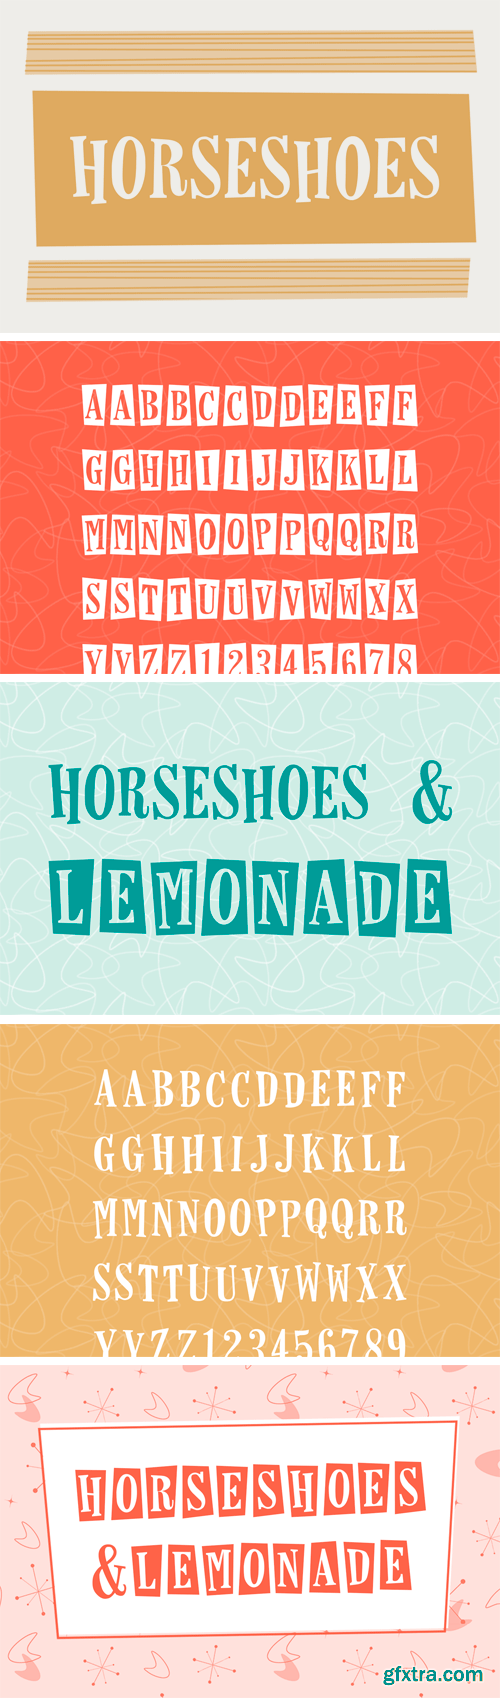 Fontbundles - Horseshoes & Lemonade 19843